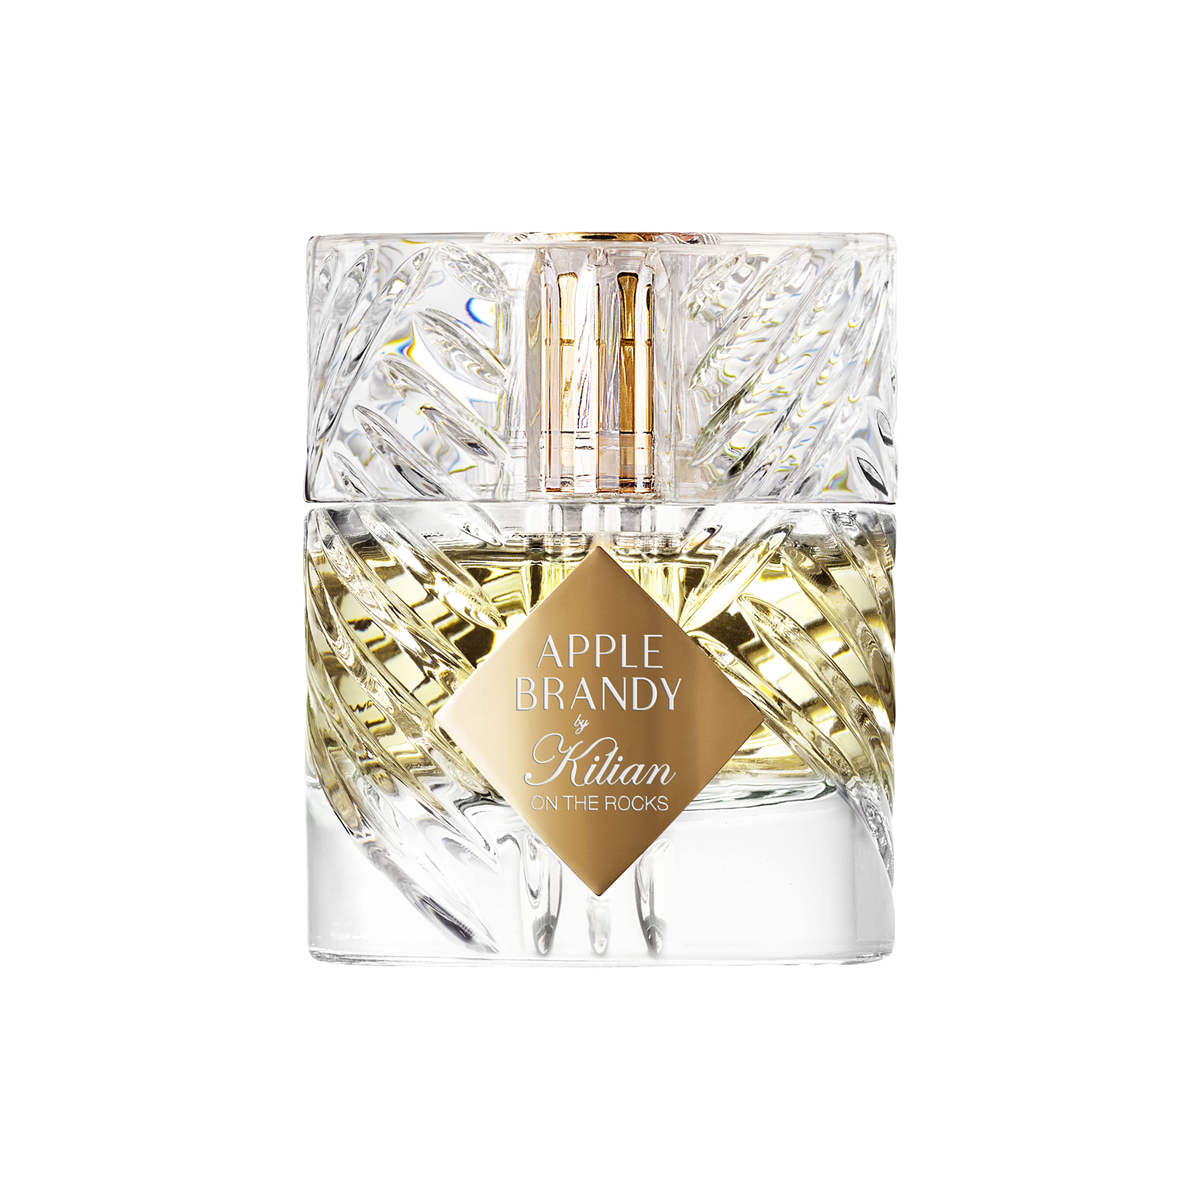 Kilian Paris - Apple Brandy Eau de Parfum